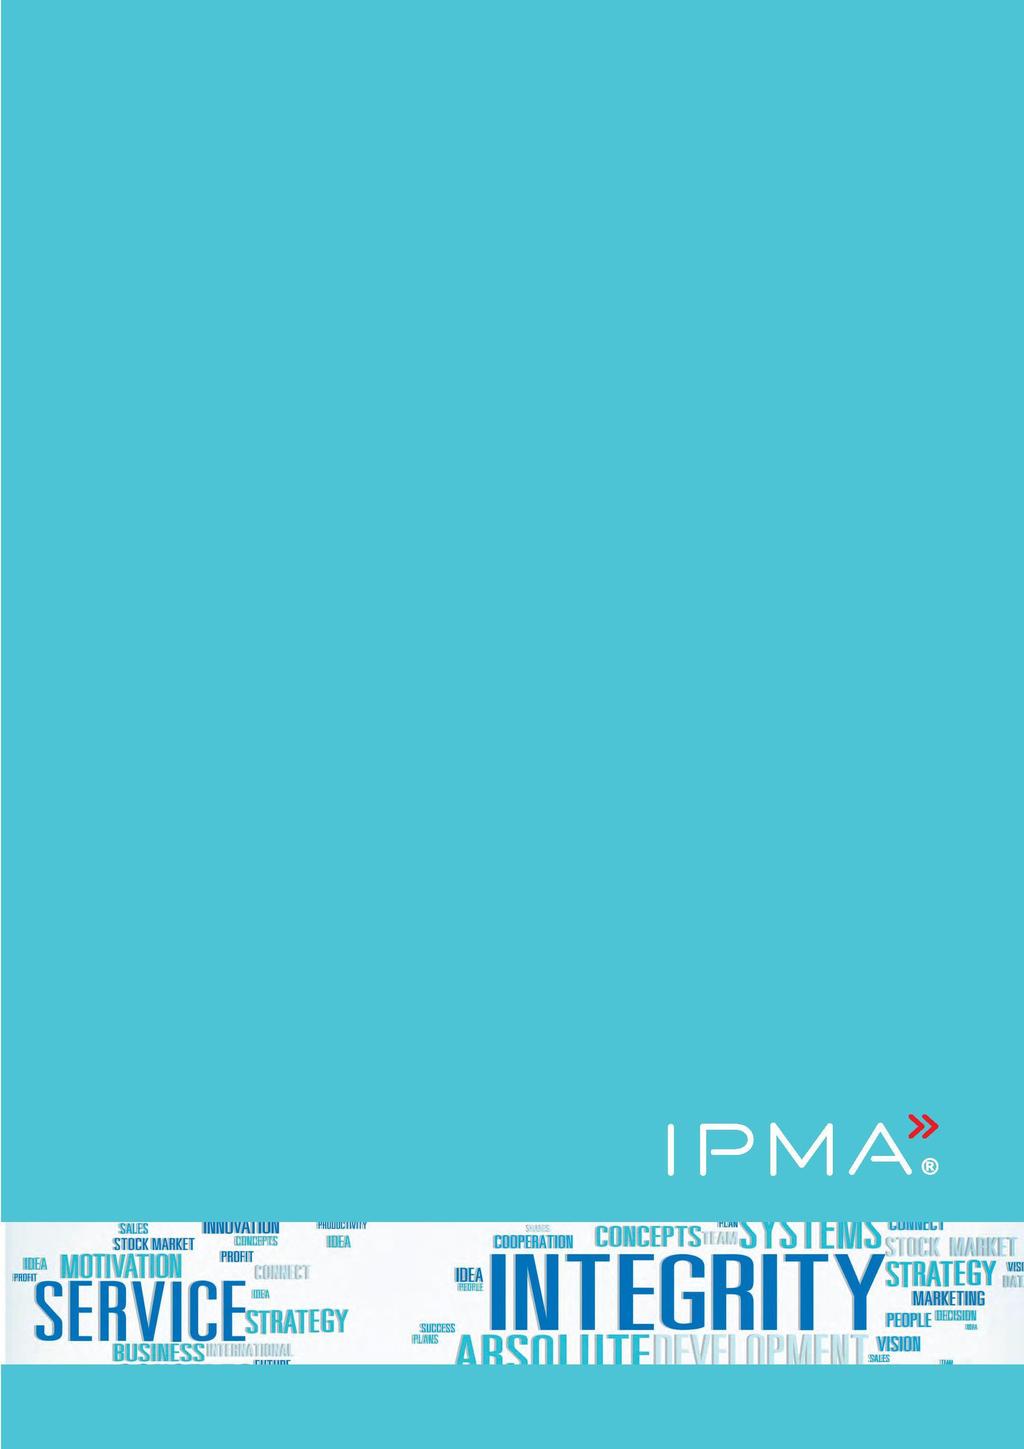 IPMA Code of Ethics and